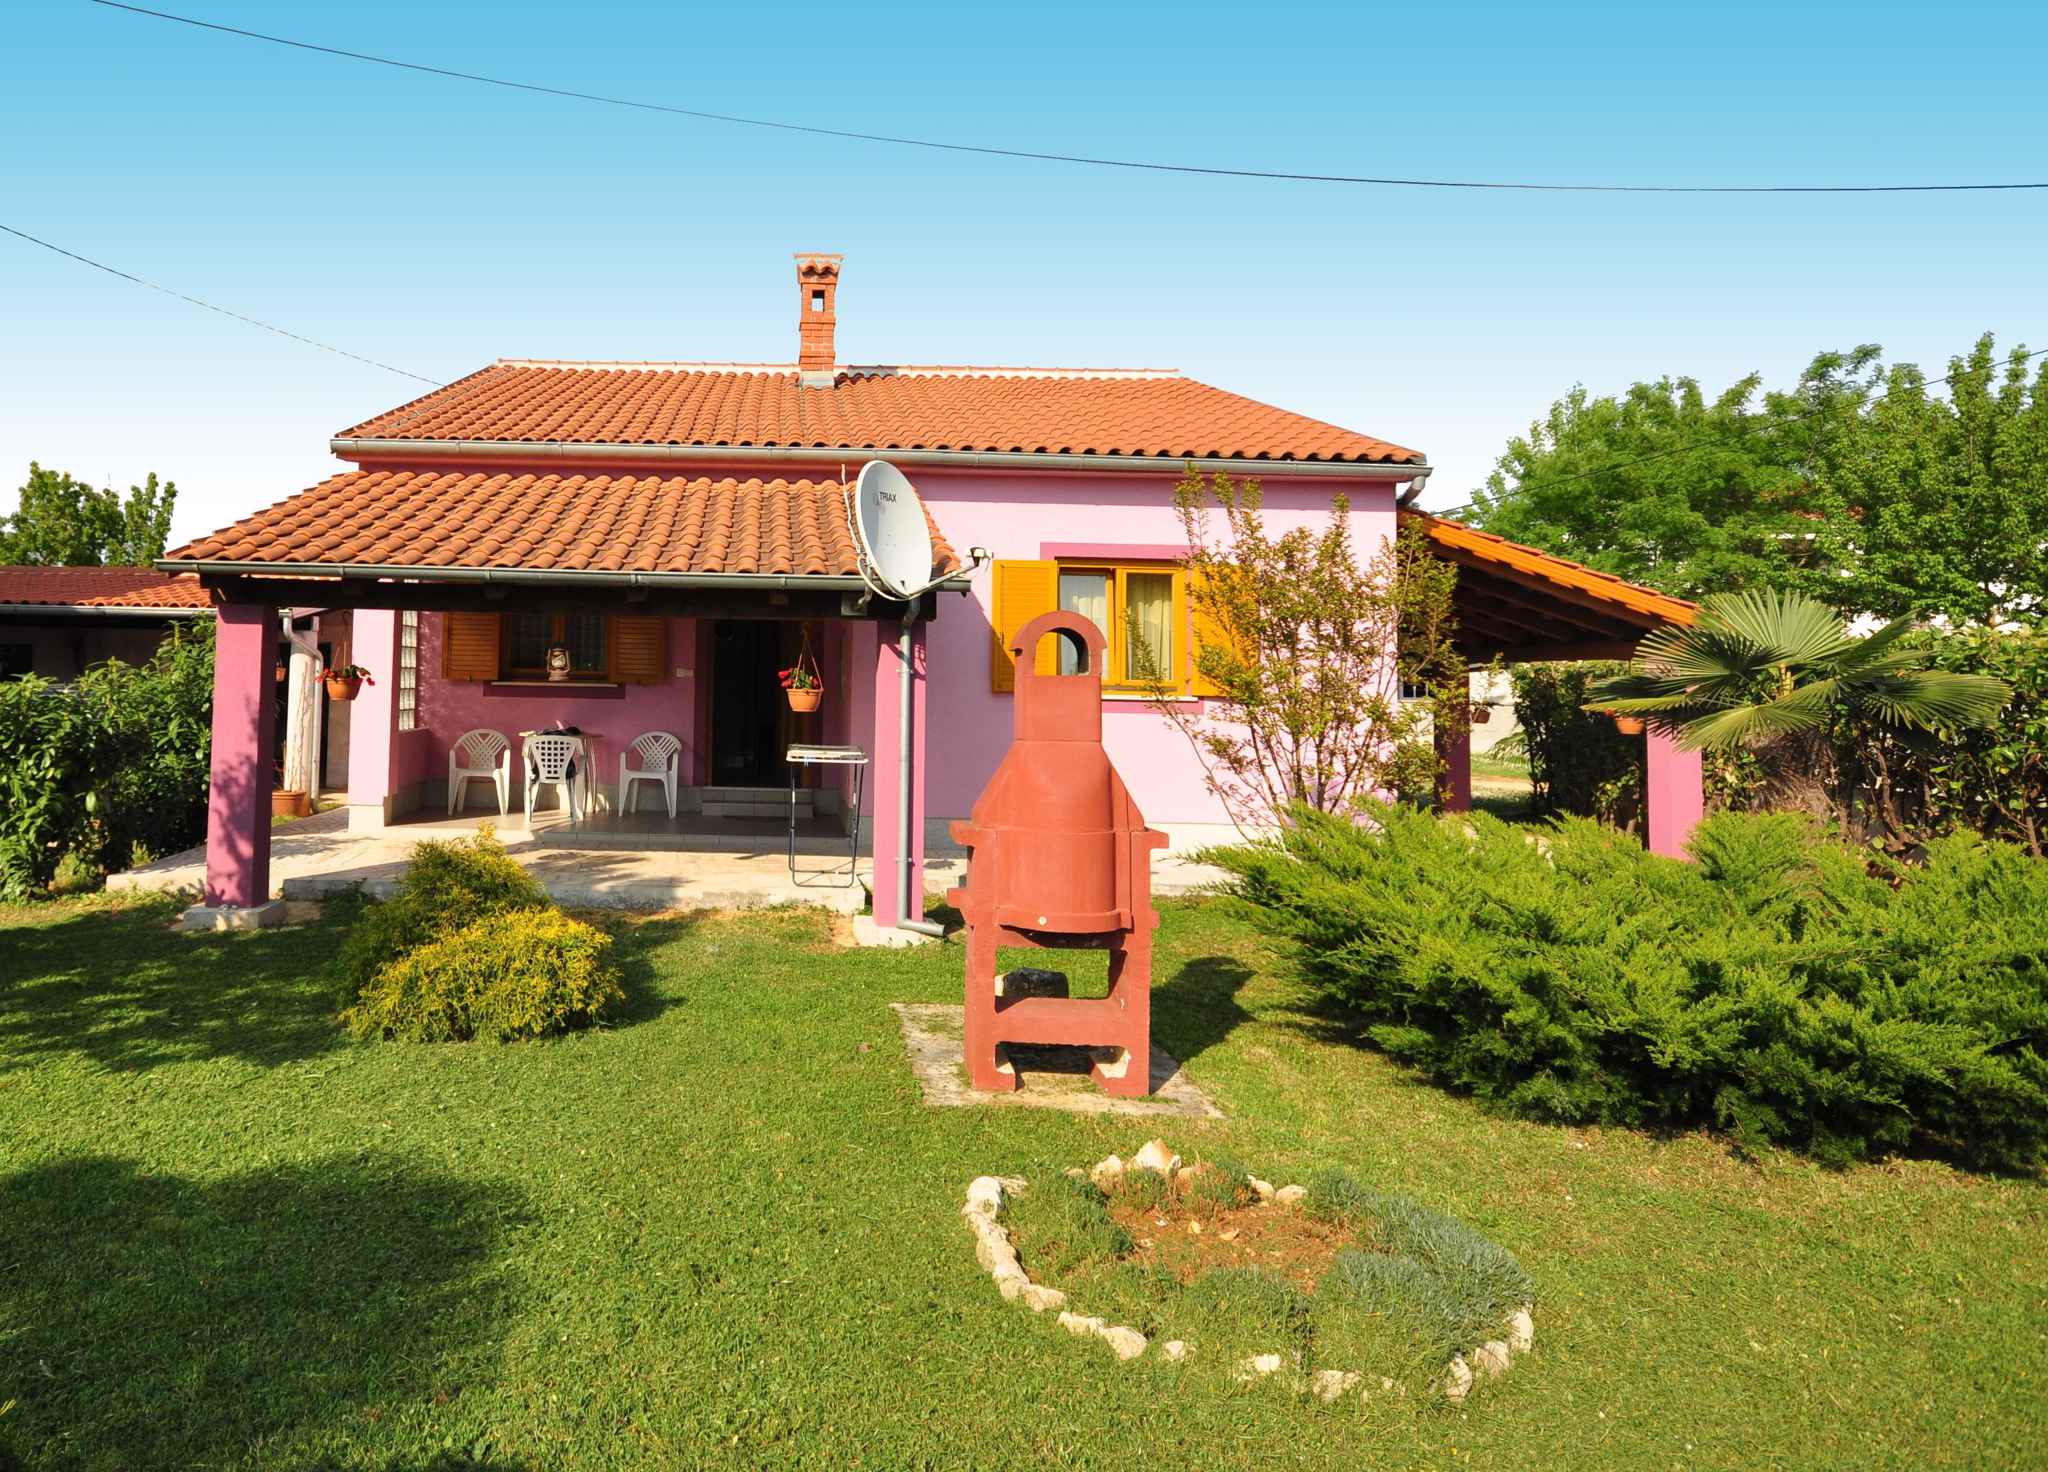 Ferienwohnung mit Terrasse, Garten und Grillmö  in Istrien